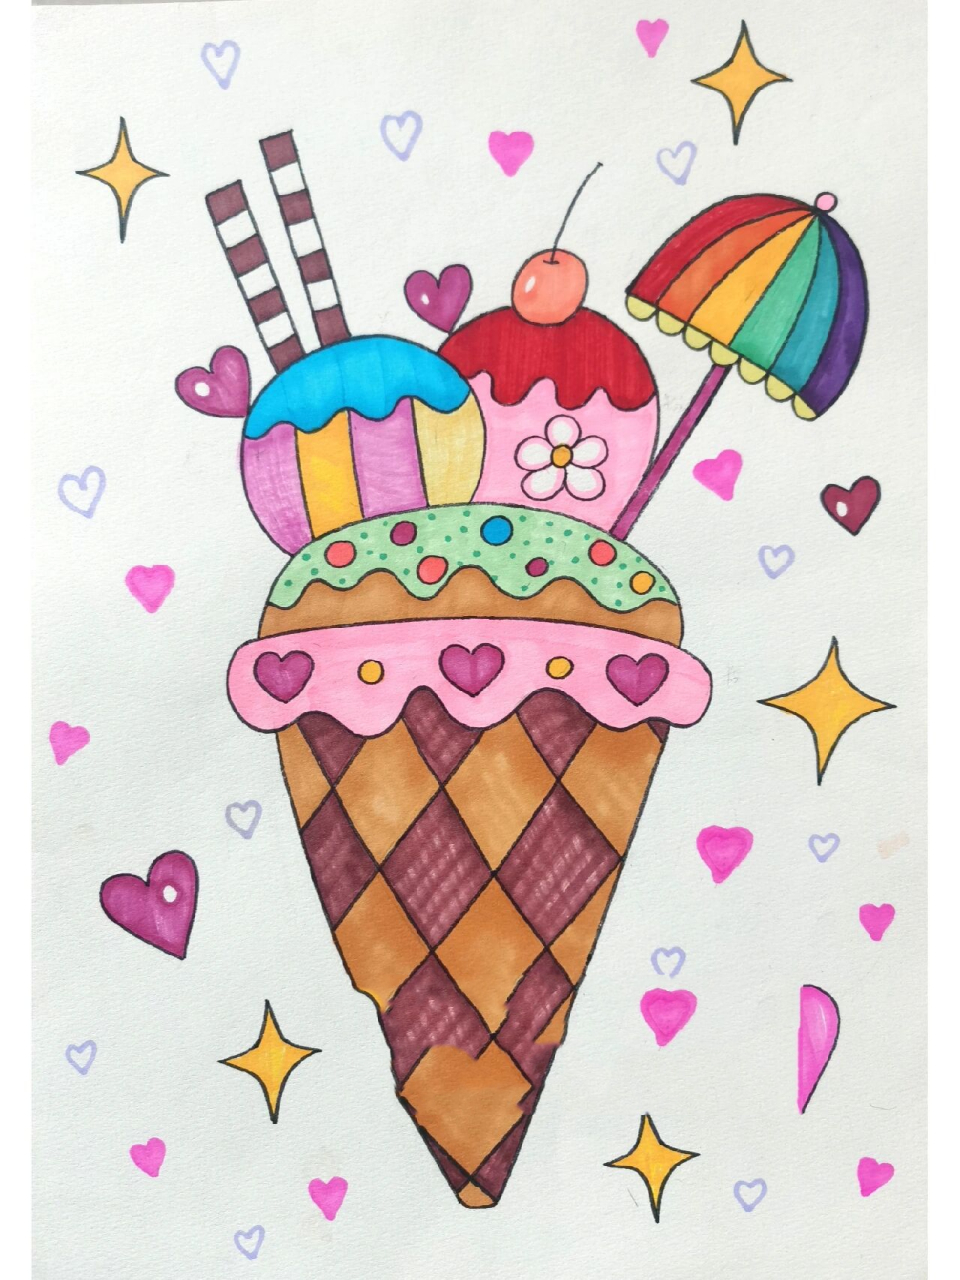 简单冰淇淋儿童画 今天你吃冰淇淋90了吗?